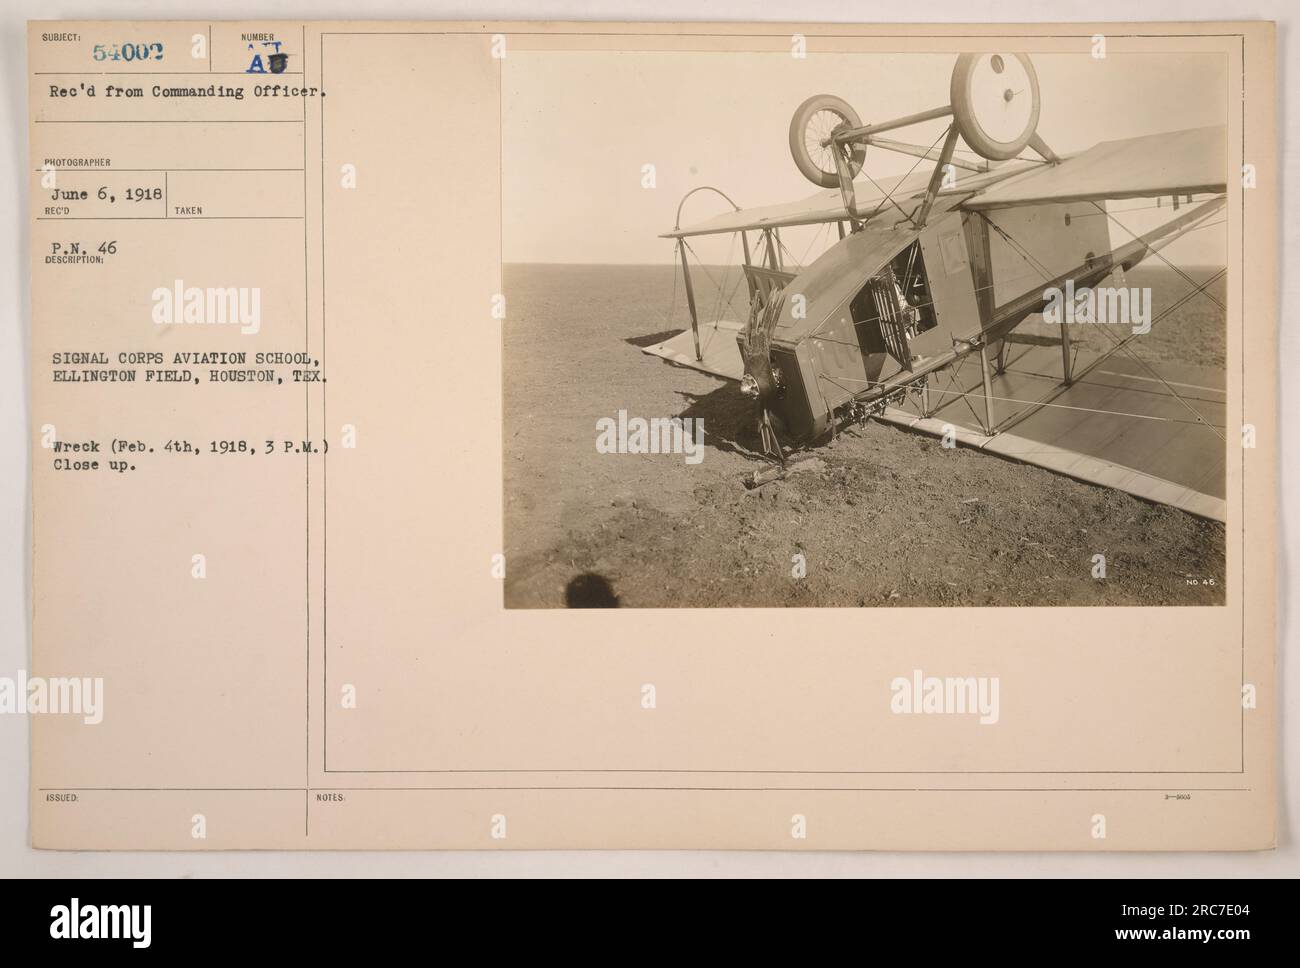 Una fotografia ravvicinata scattata a Ellington Field, Houston, Texas, il 4 febbraio 1918 alle 15:00 Il soggetto è un veicolo distrutto. L'immagine è stata ricevuta dall'ufficiale comandante e il fotografo è sconosciuto. Fu successivamente pubblicato il 6 giugno 1918, come parte della documentazione fotografica della Signal Corps Aviation School. Foto Stock